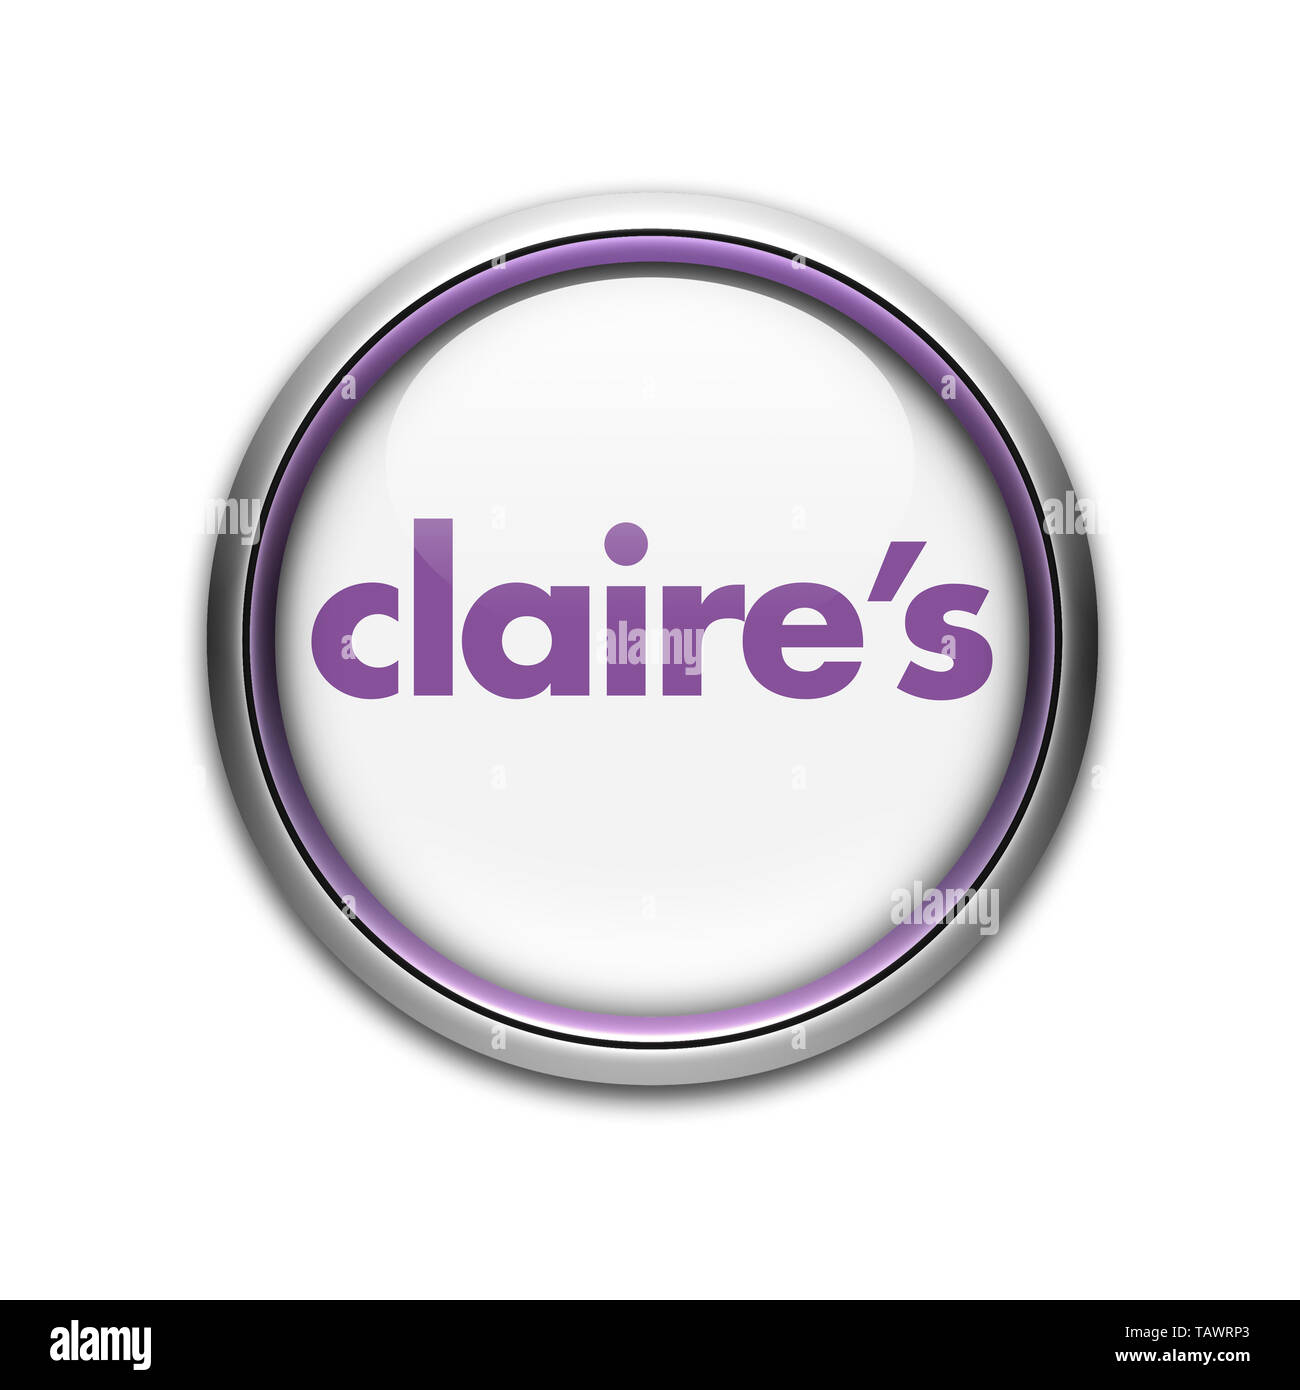 Claires logo Stock Photo